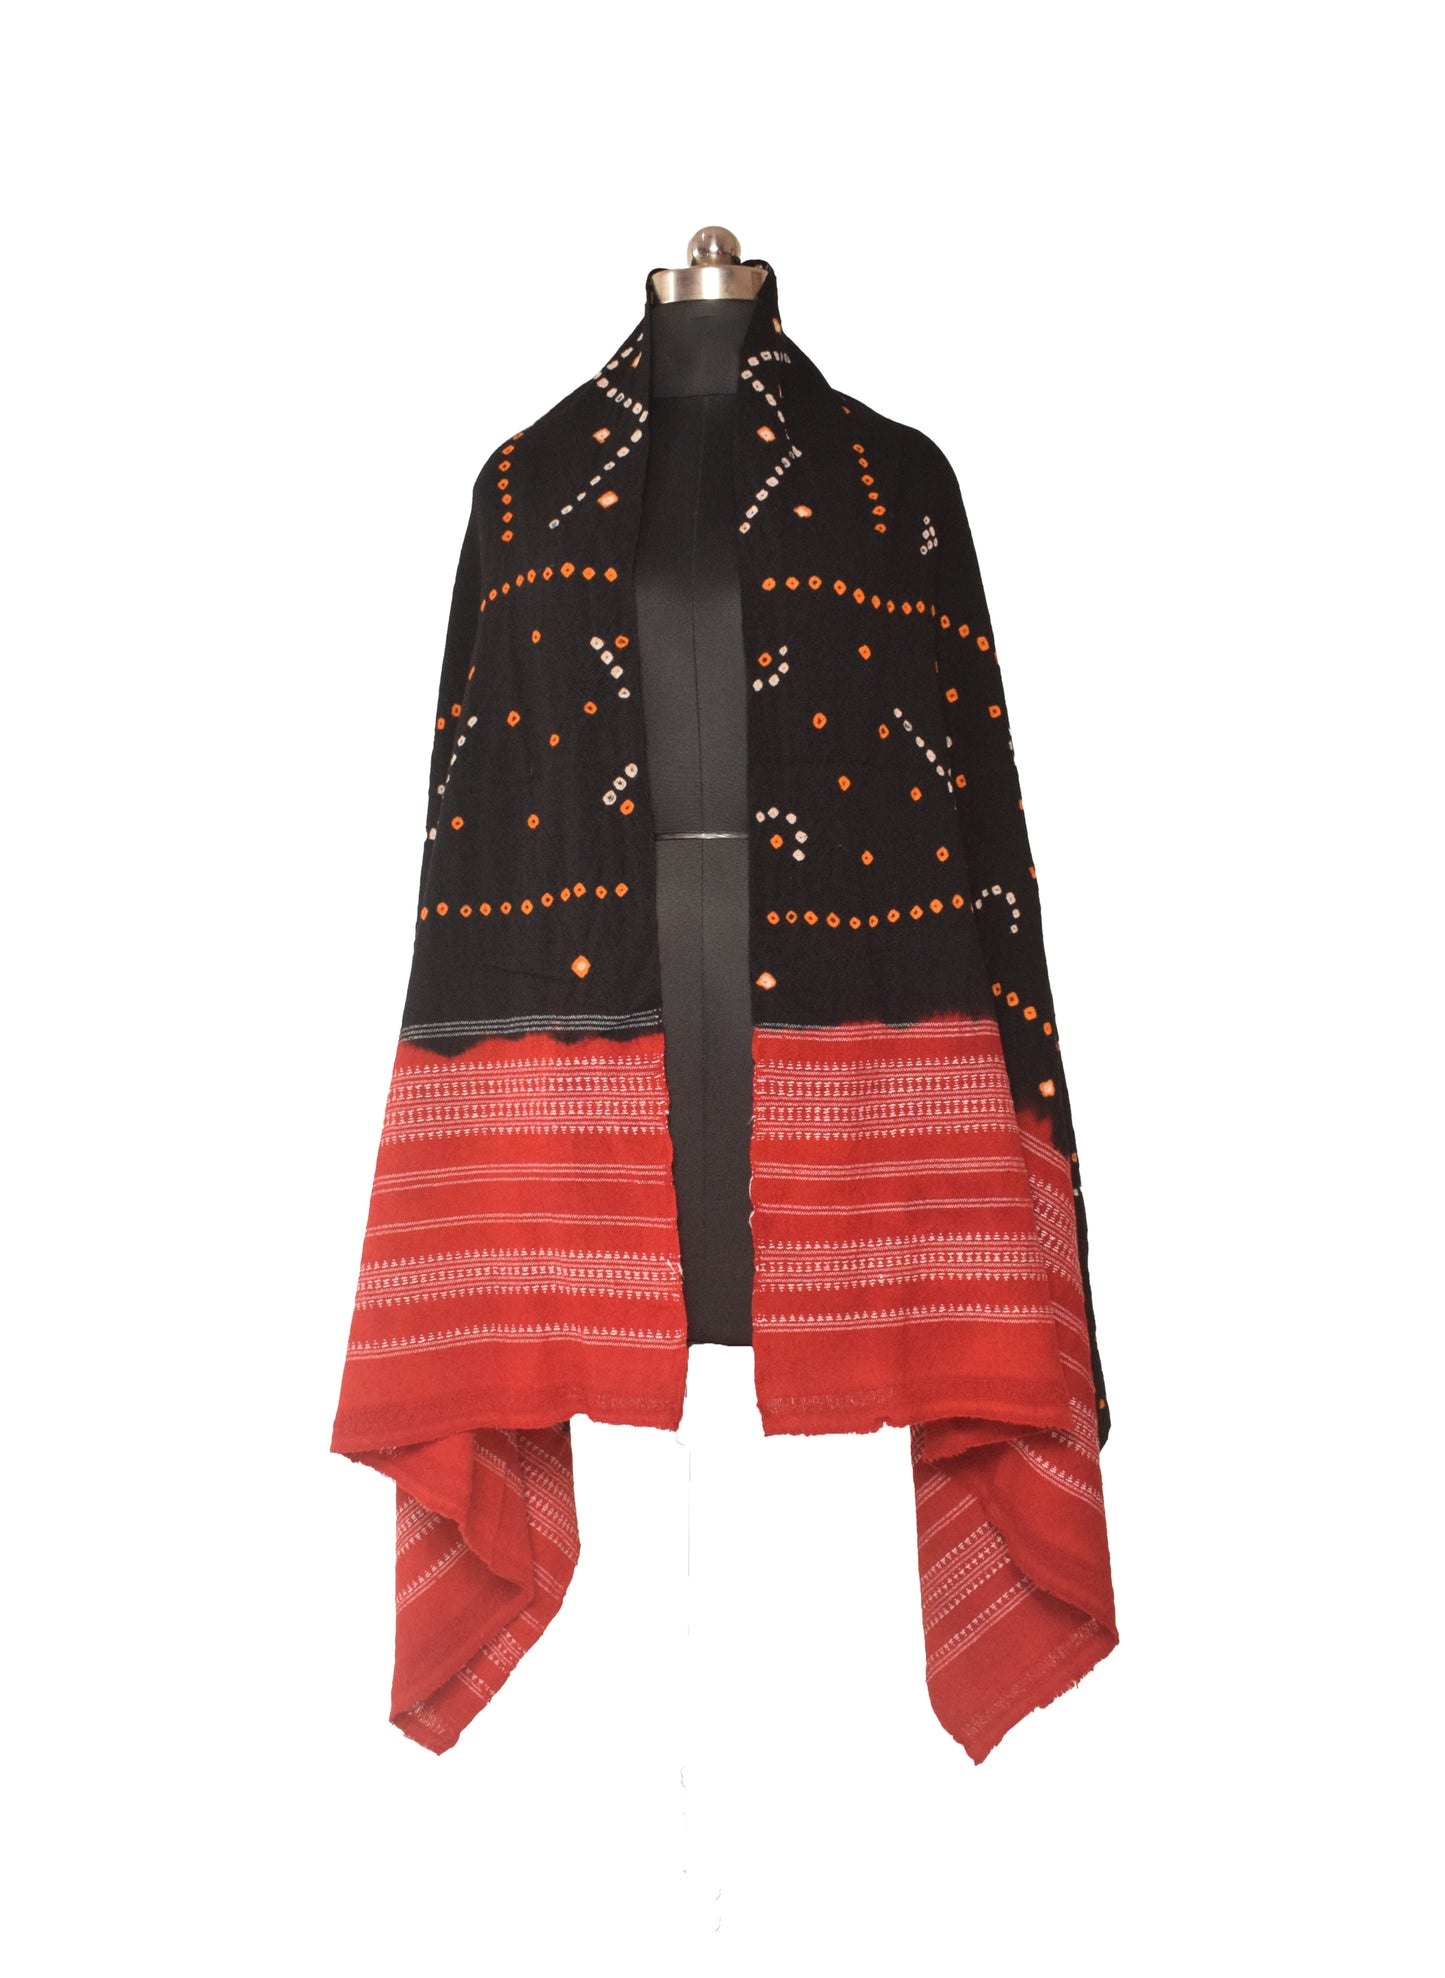 Bandhej ( Tie-Dye) Wool Shawl   - 2.1 Mtr Length    -  SKU : DB27B02E